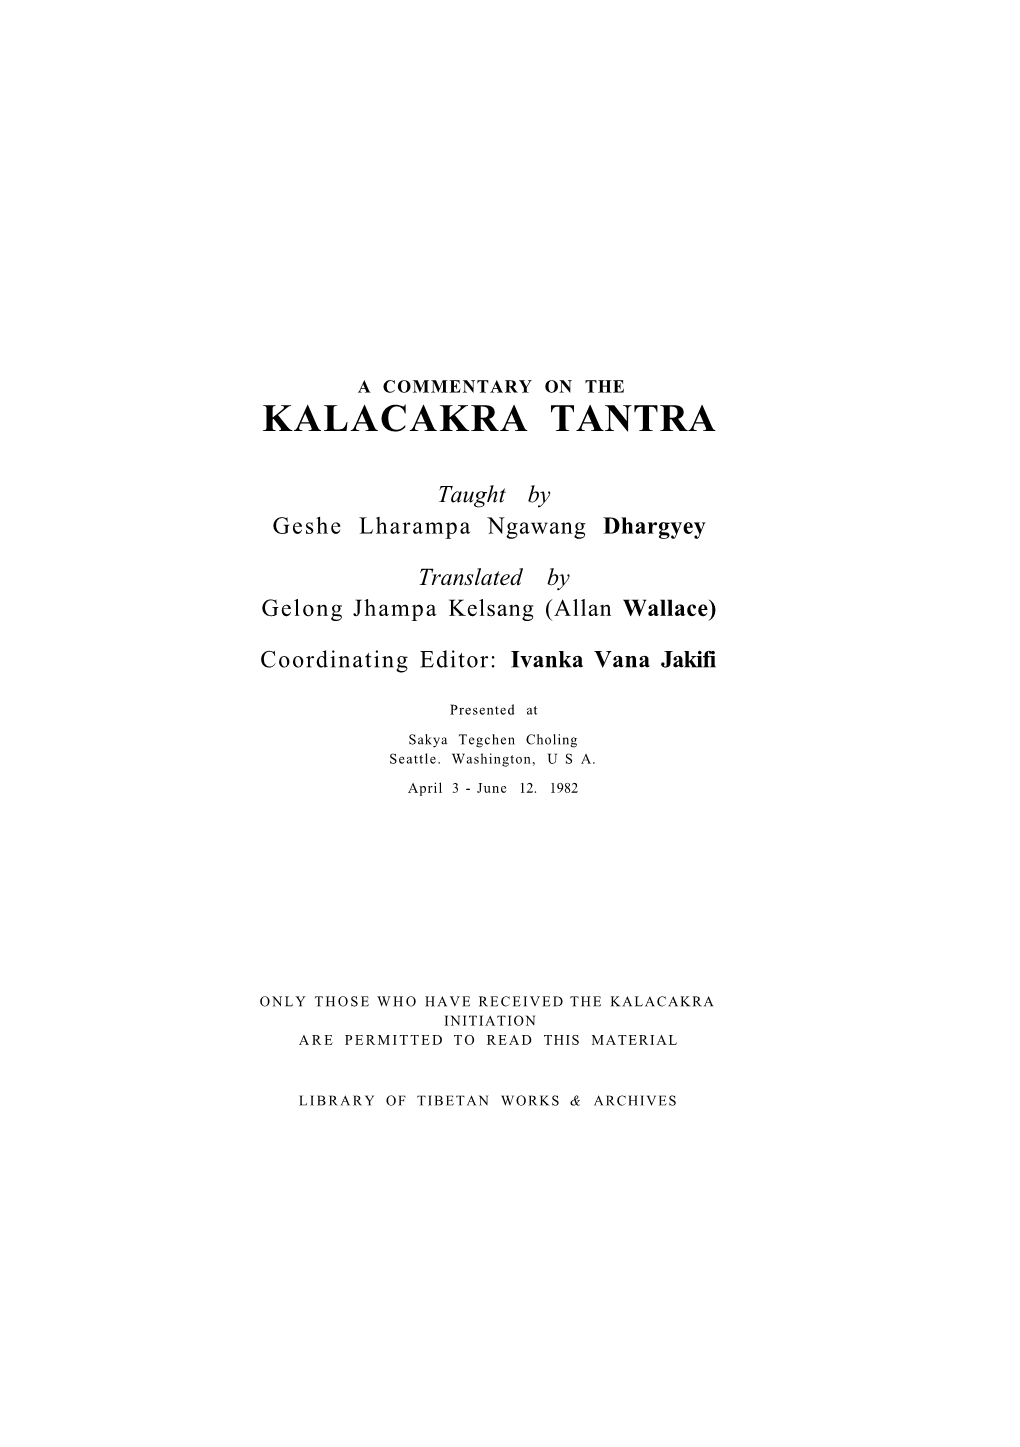 Kalacakra Tantra